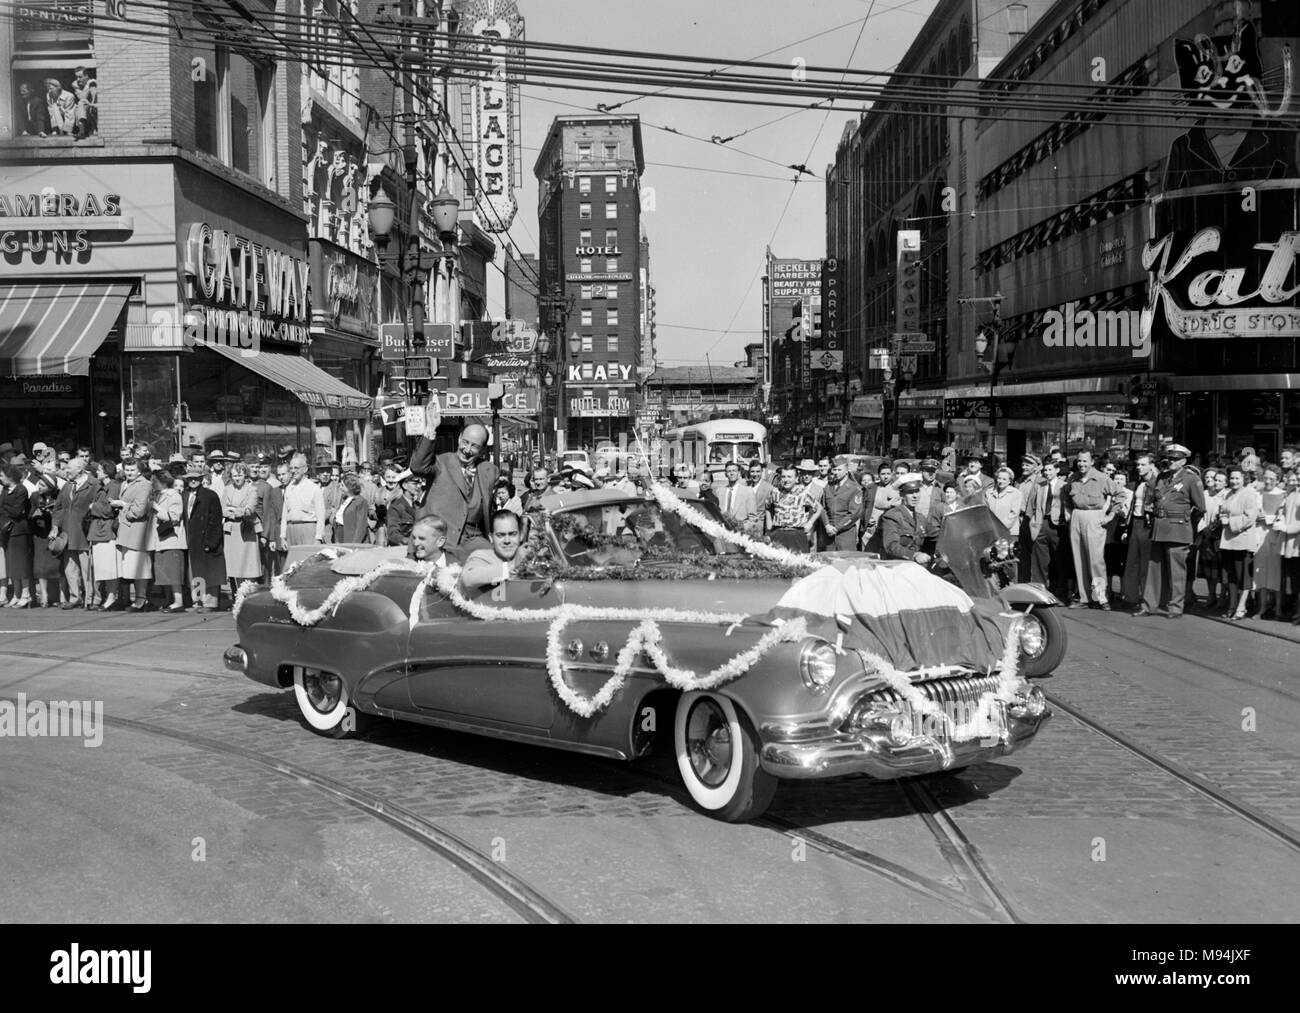 Democeratic candidate présidentielle Adlai Stevenson, campagnes au centre-ville de Kansas City, Missouri, en 1952. Kay Hotel. La jonction. Banque D'Images